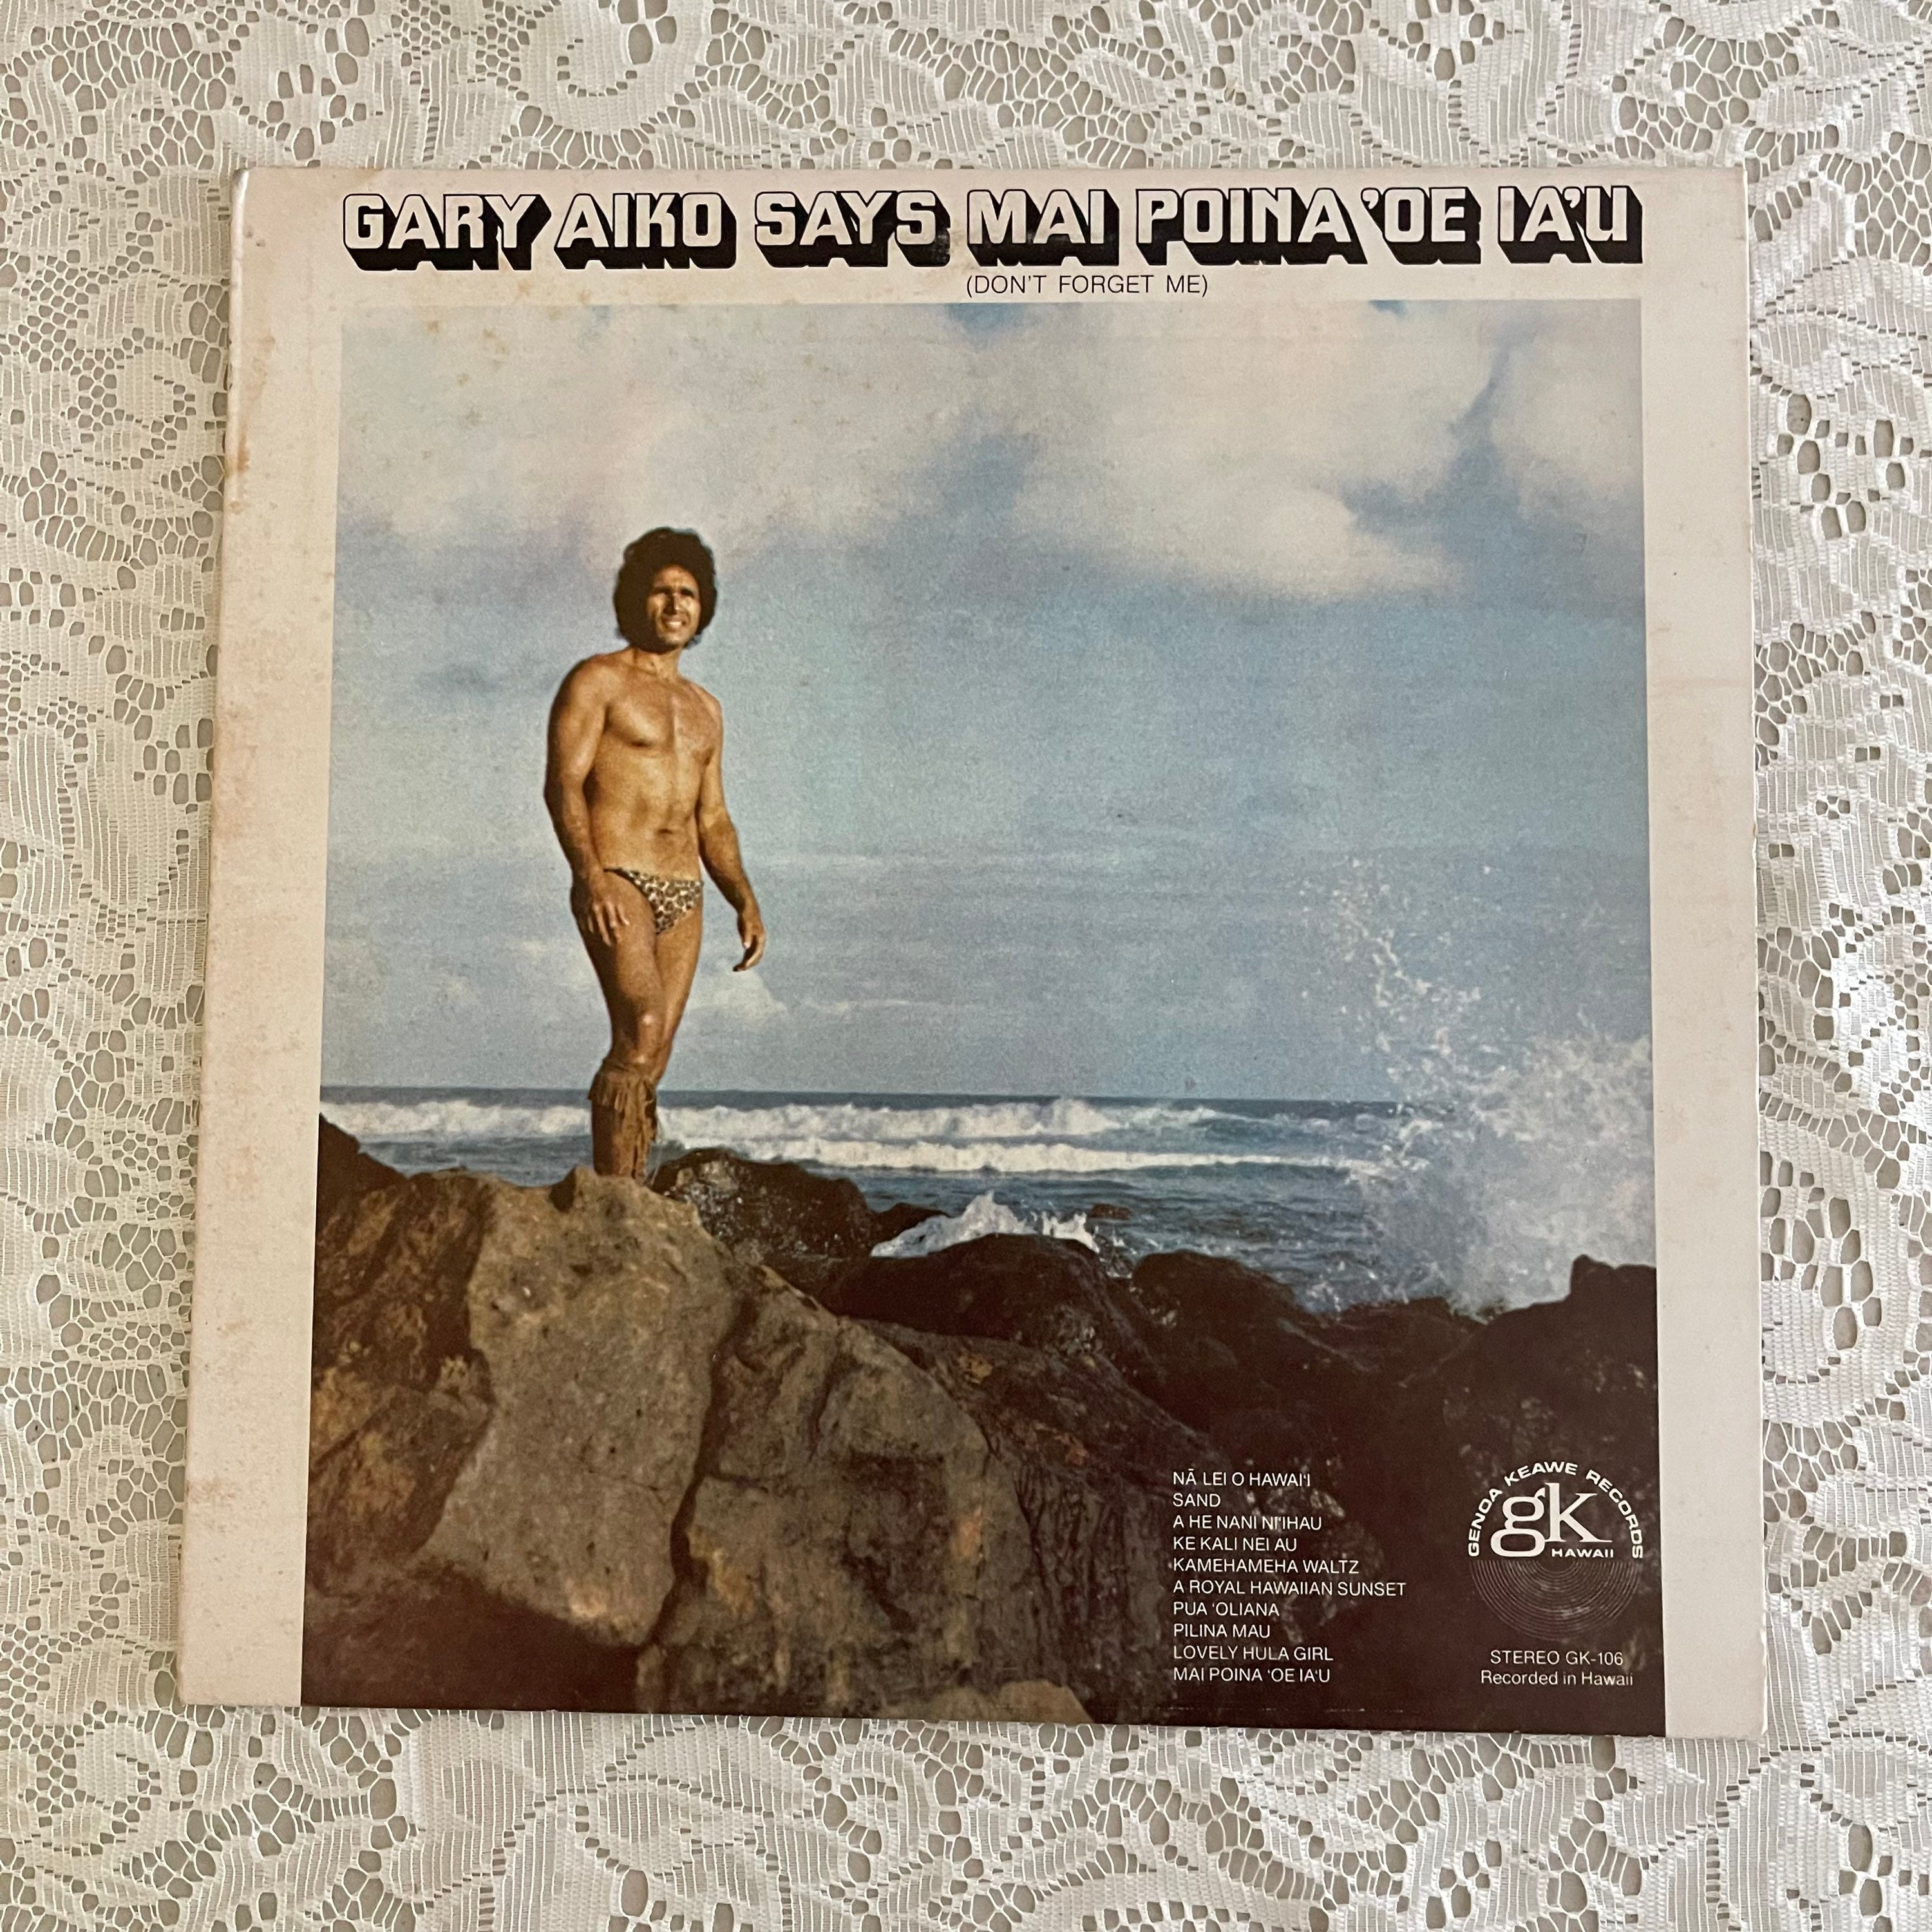 Gary Aiko Says Mai Poina oe Iau Vinyl Record LP Hawaiian